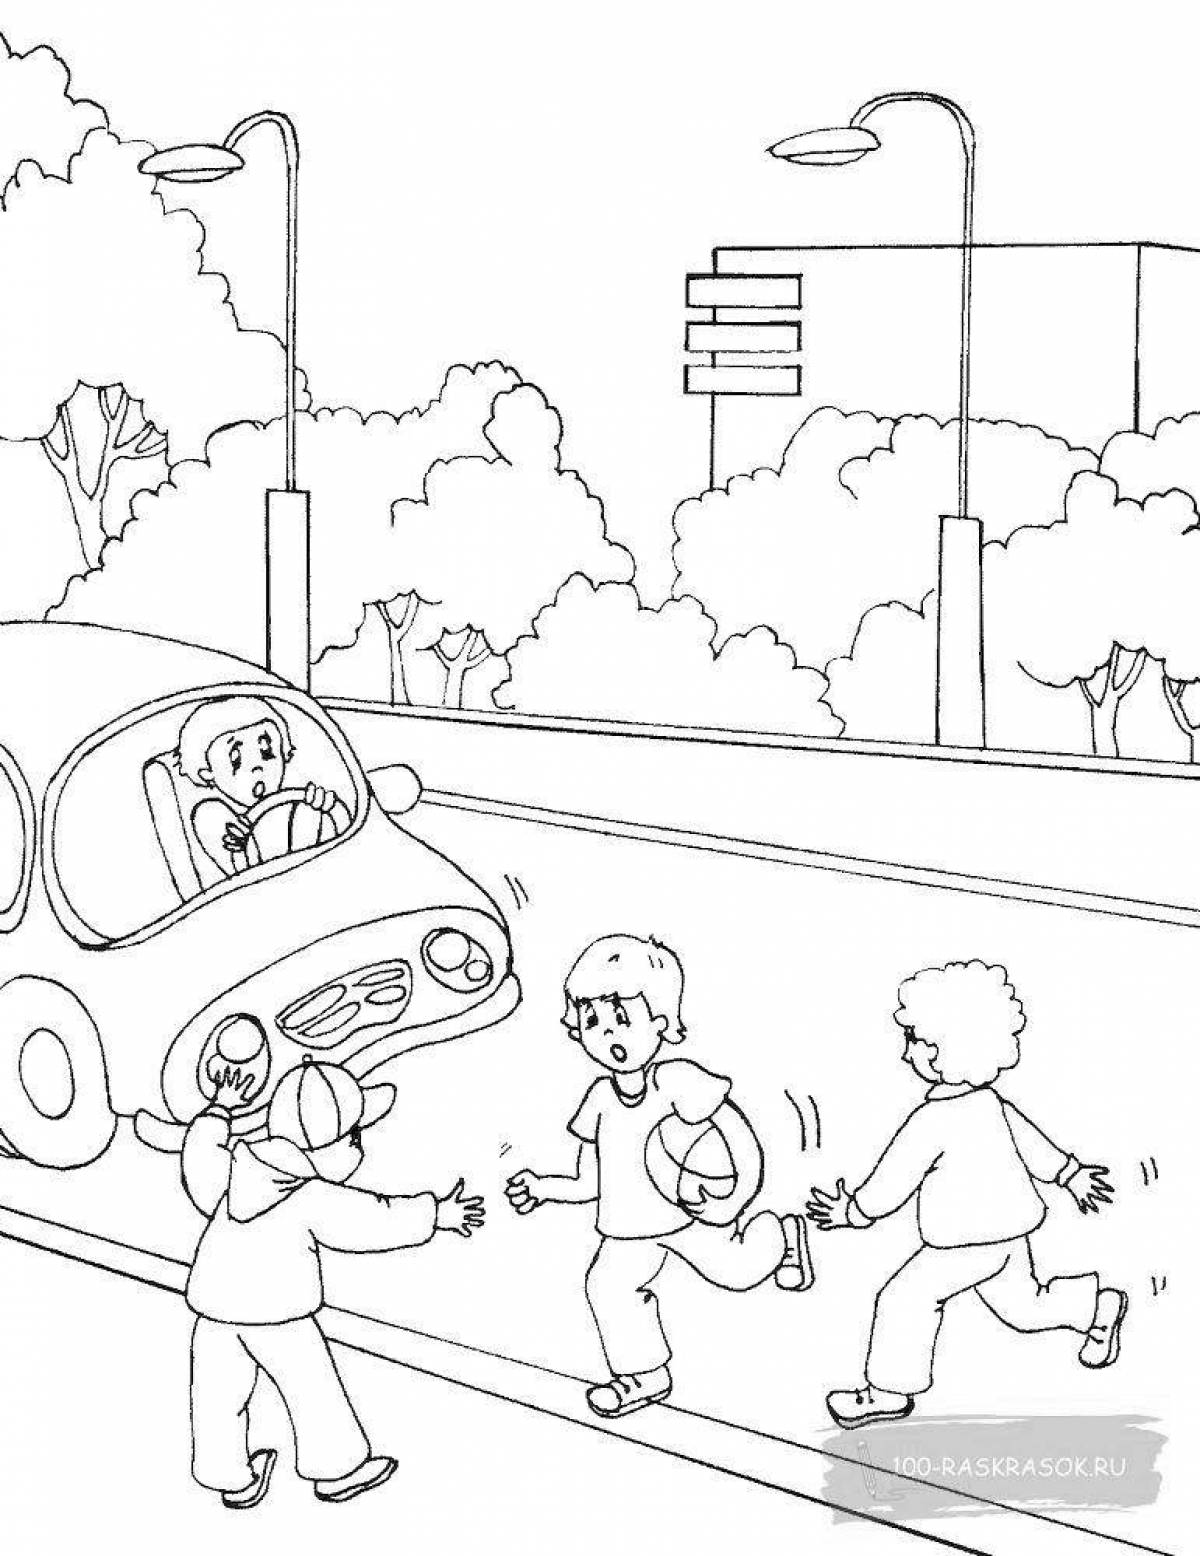 Правила поведения на дороге рисунок в детский сад